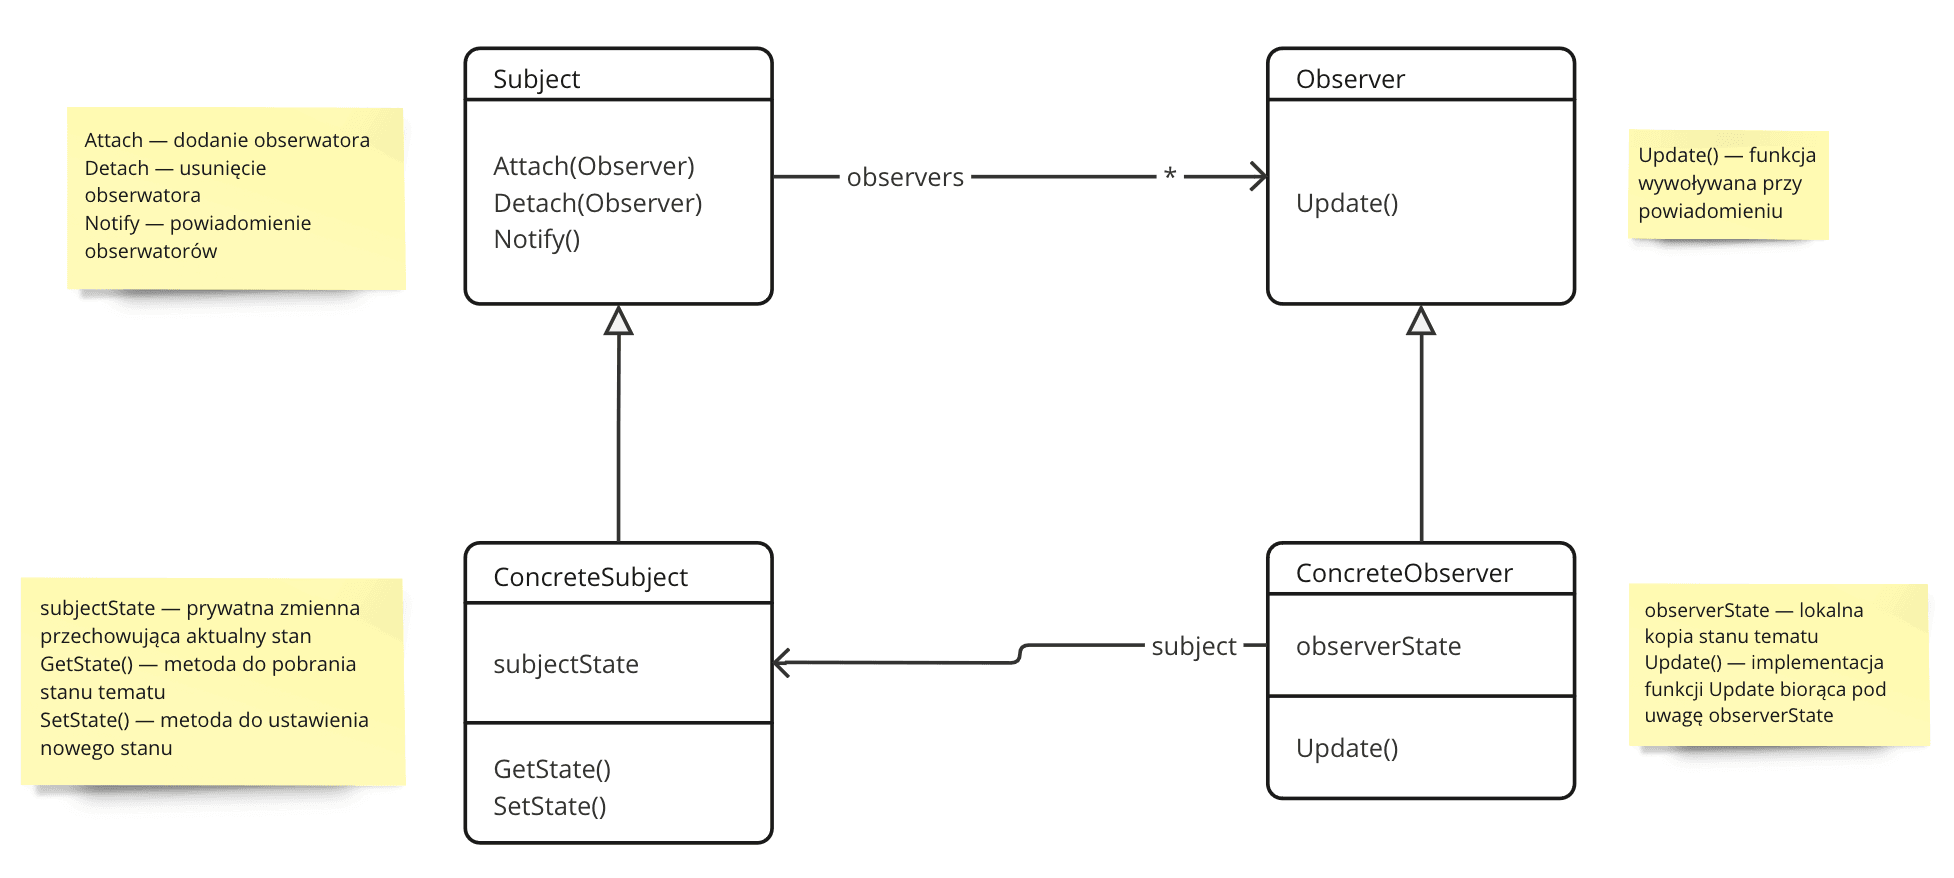 Diagram klas UML przedstawiający powiązania między czterema klasami: Subject, Observer, ConcreteSubject, ConcreteObserver.